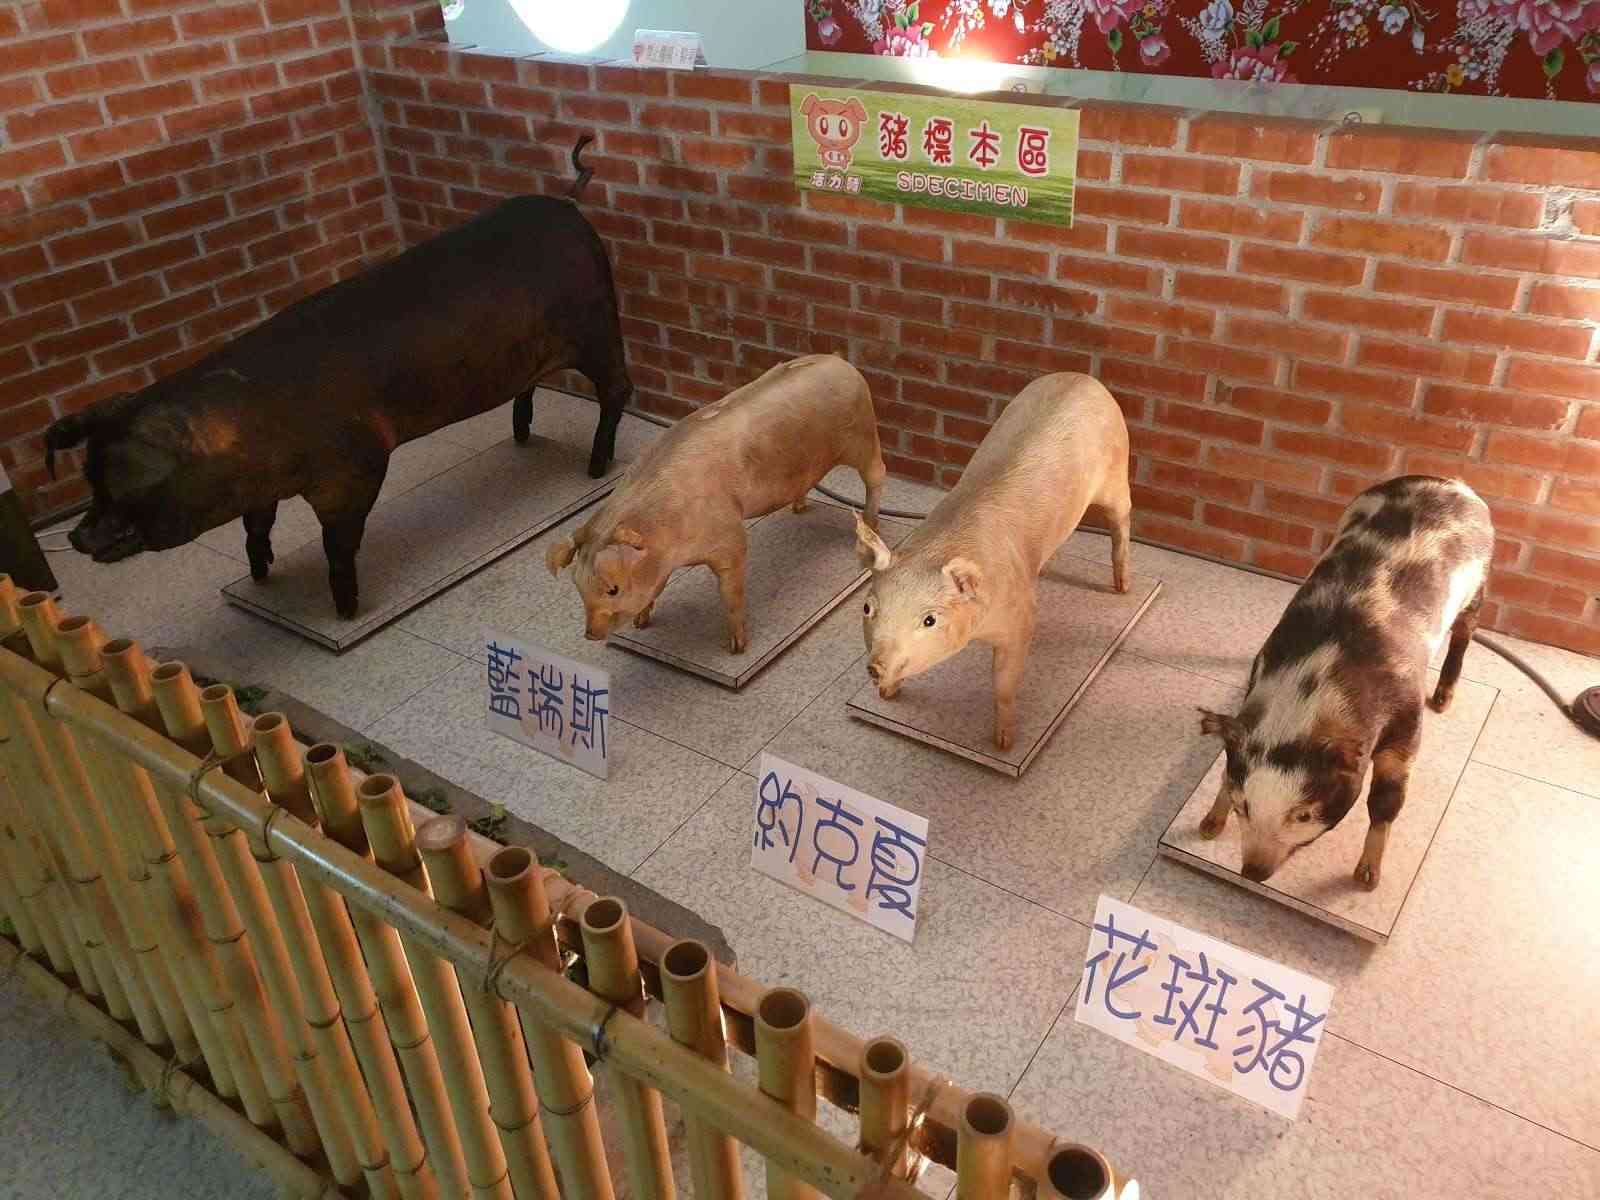 香里活力豬展覽館/ 攝影者: 蔡大緯

(由第三方資訊提供)